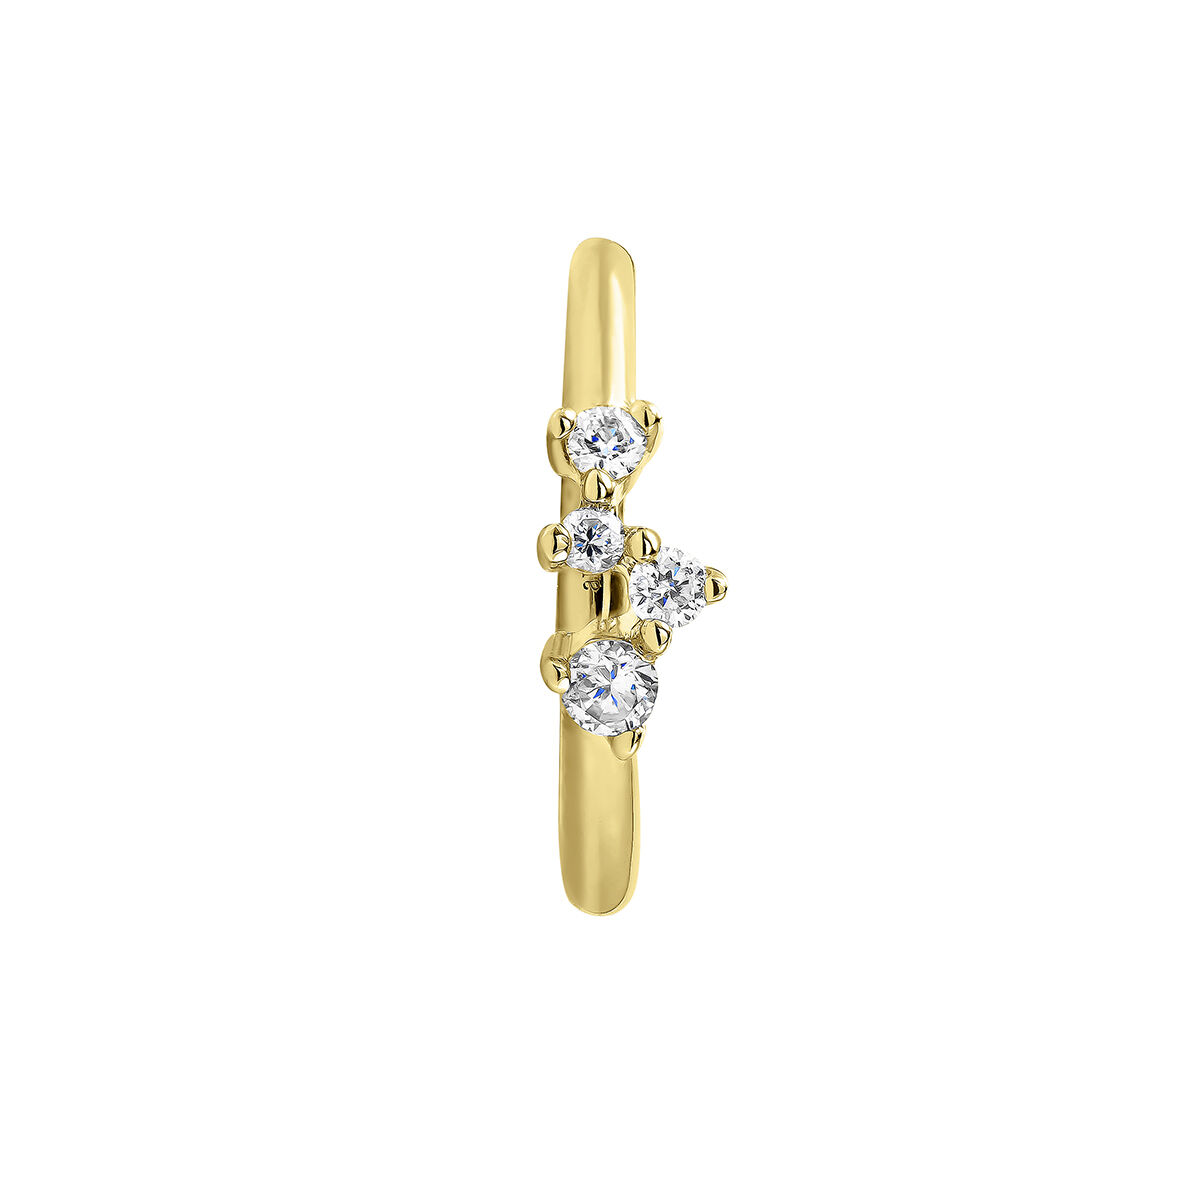 Petite boucle d’oreille créole à l’unité en or jaune 9 ct avec des diamants de 0,035 ct, J04958-02-H, hi-res